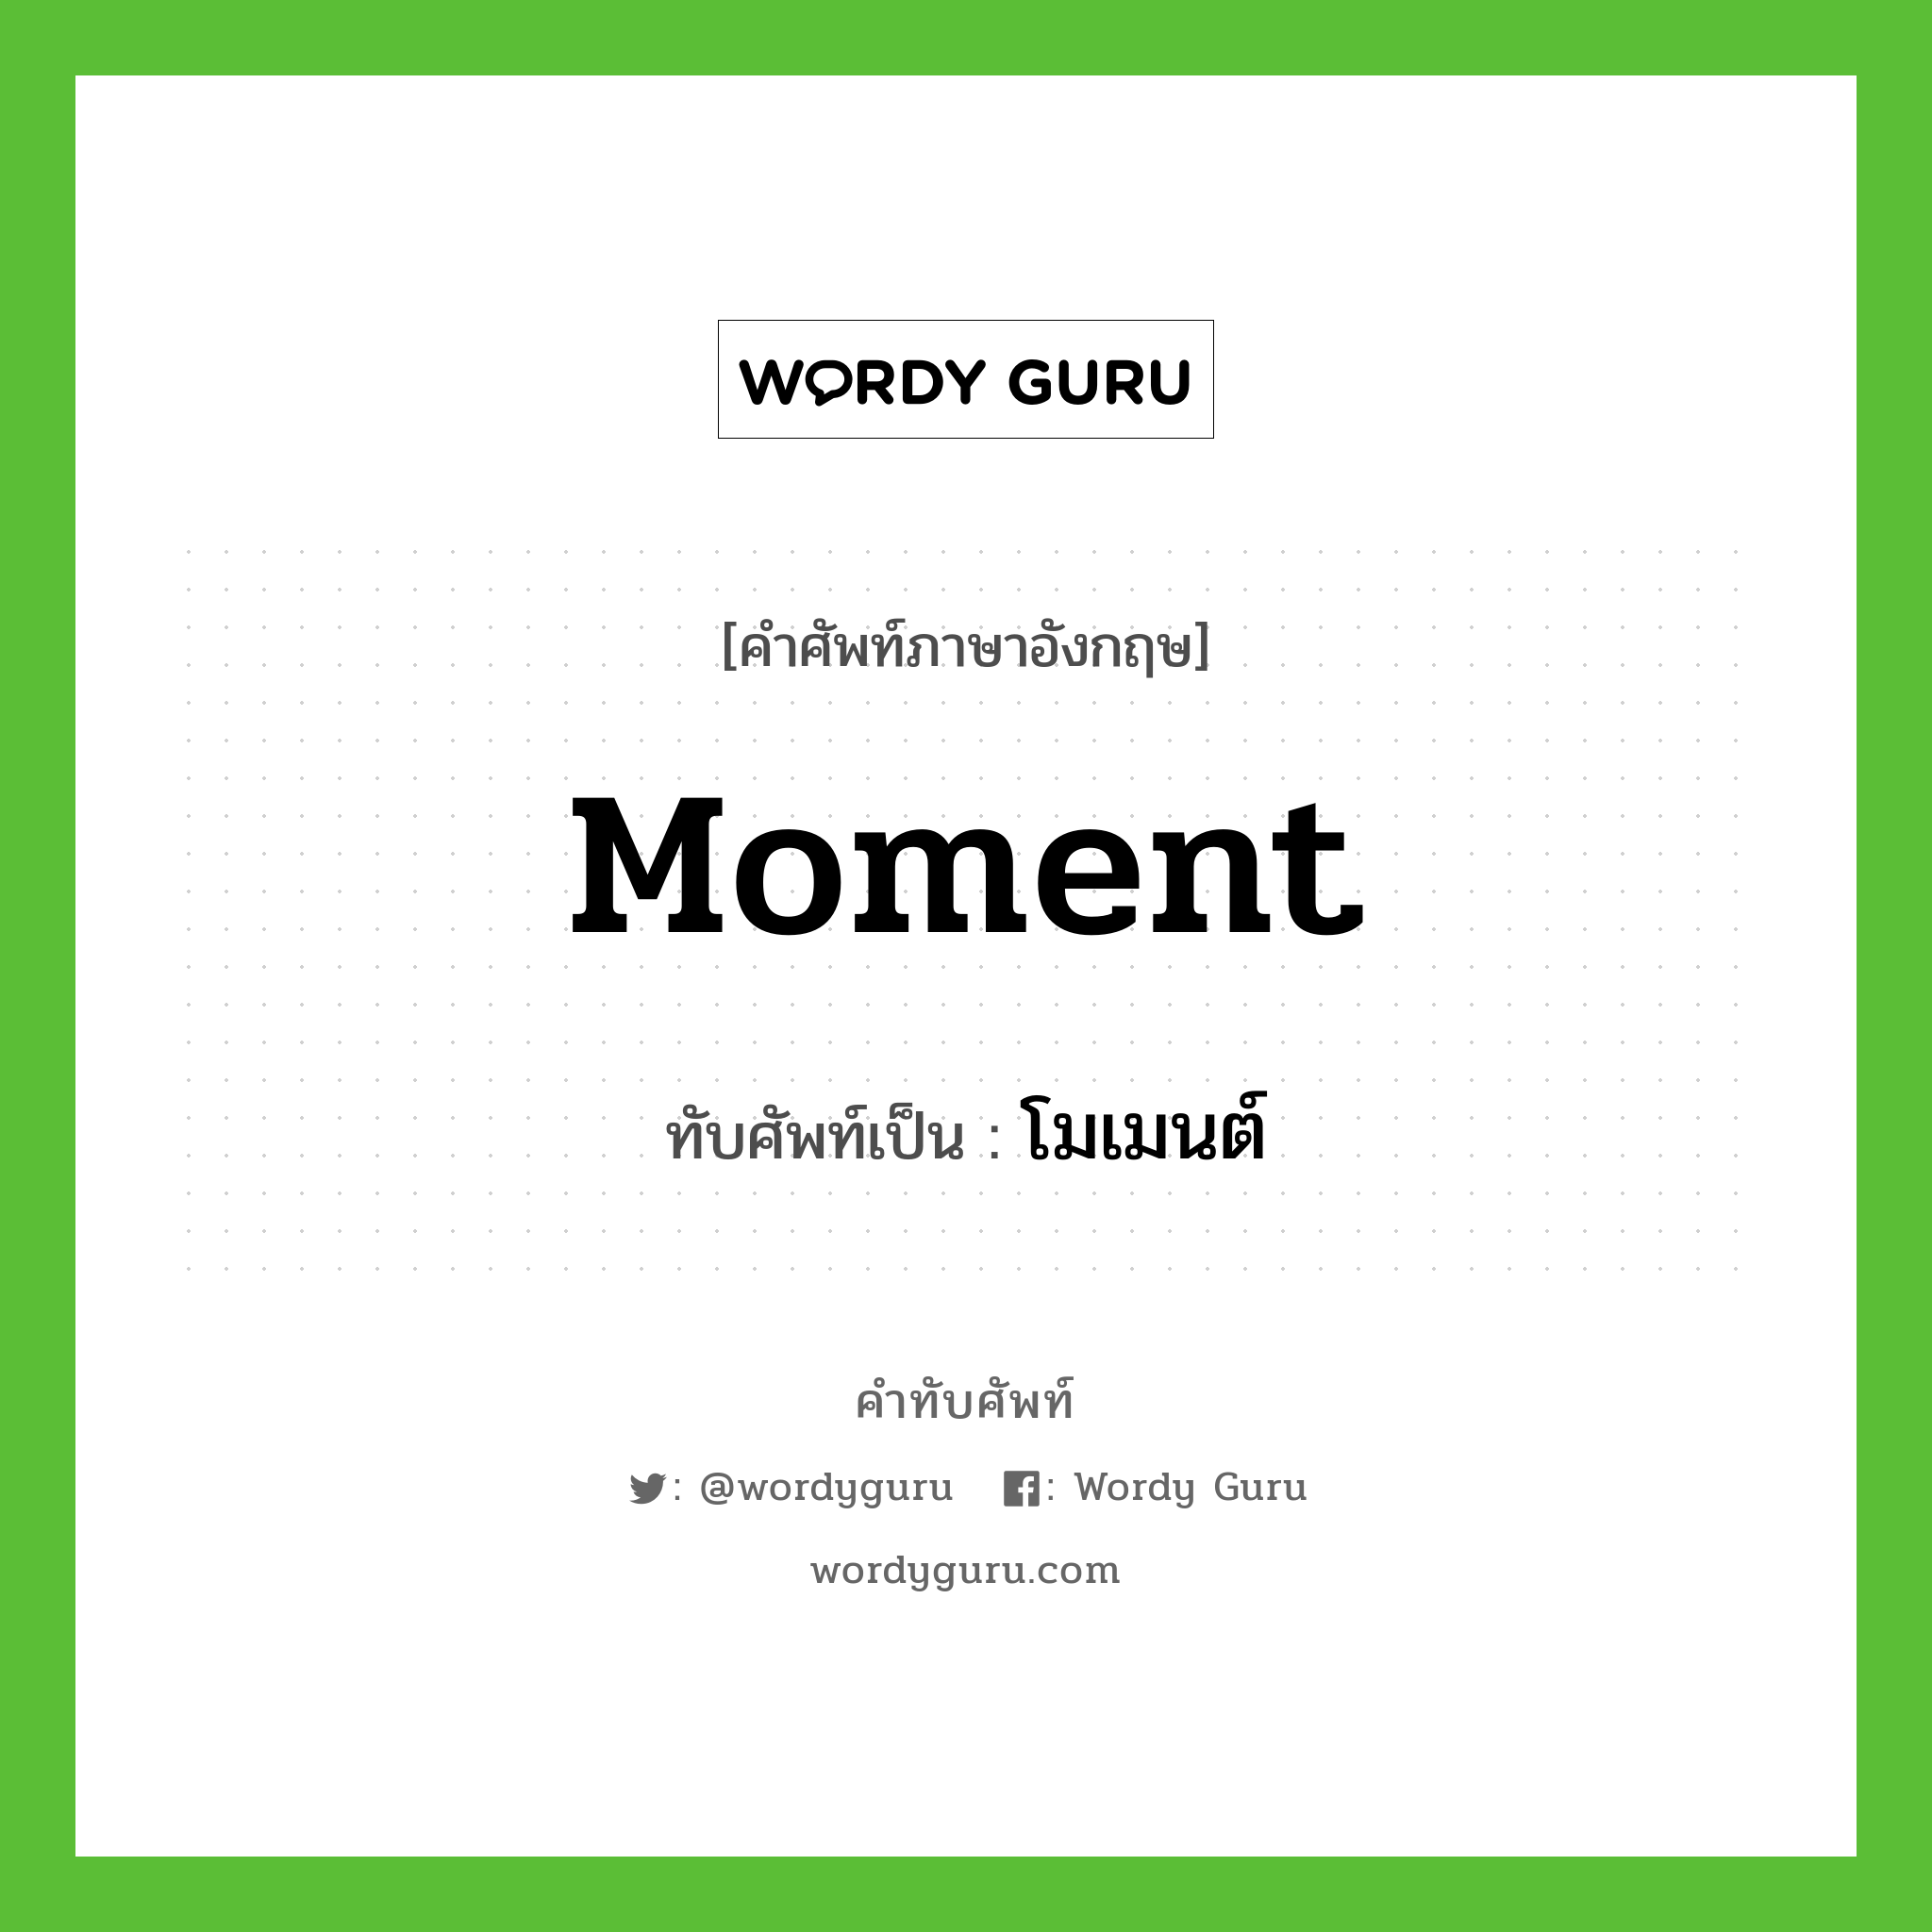 moment เขียนเป็นคำไทยว่าอะไร?, คำศัพท์ภาษาอังกฤษ moment ทับศัพท์เป็น โมเมนต์